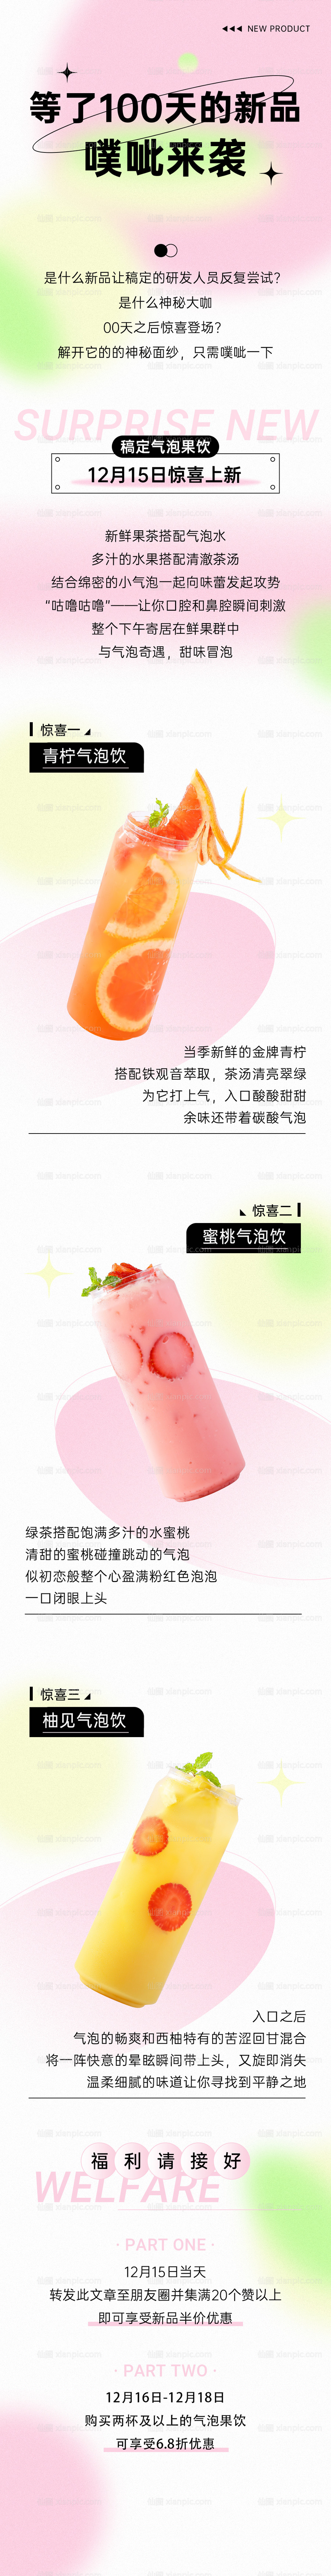 素材乐-奶茶饮品产品营销长图海报